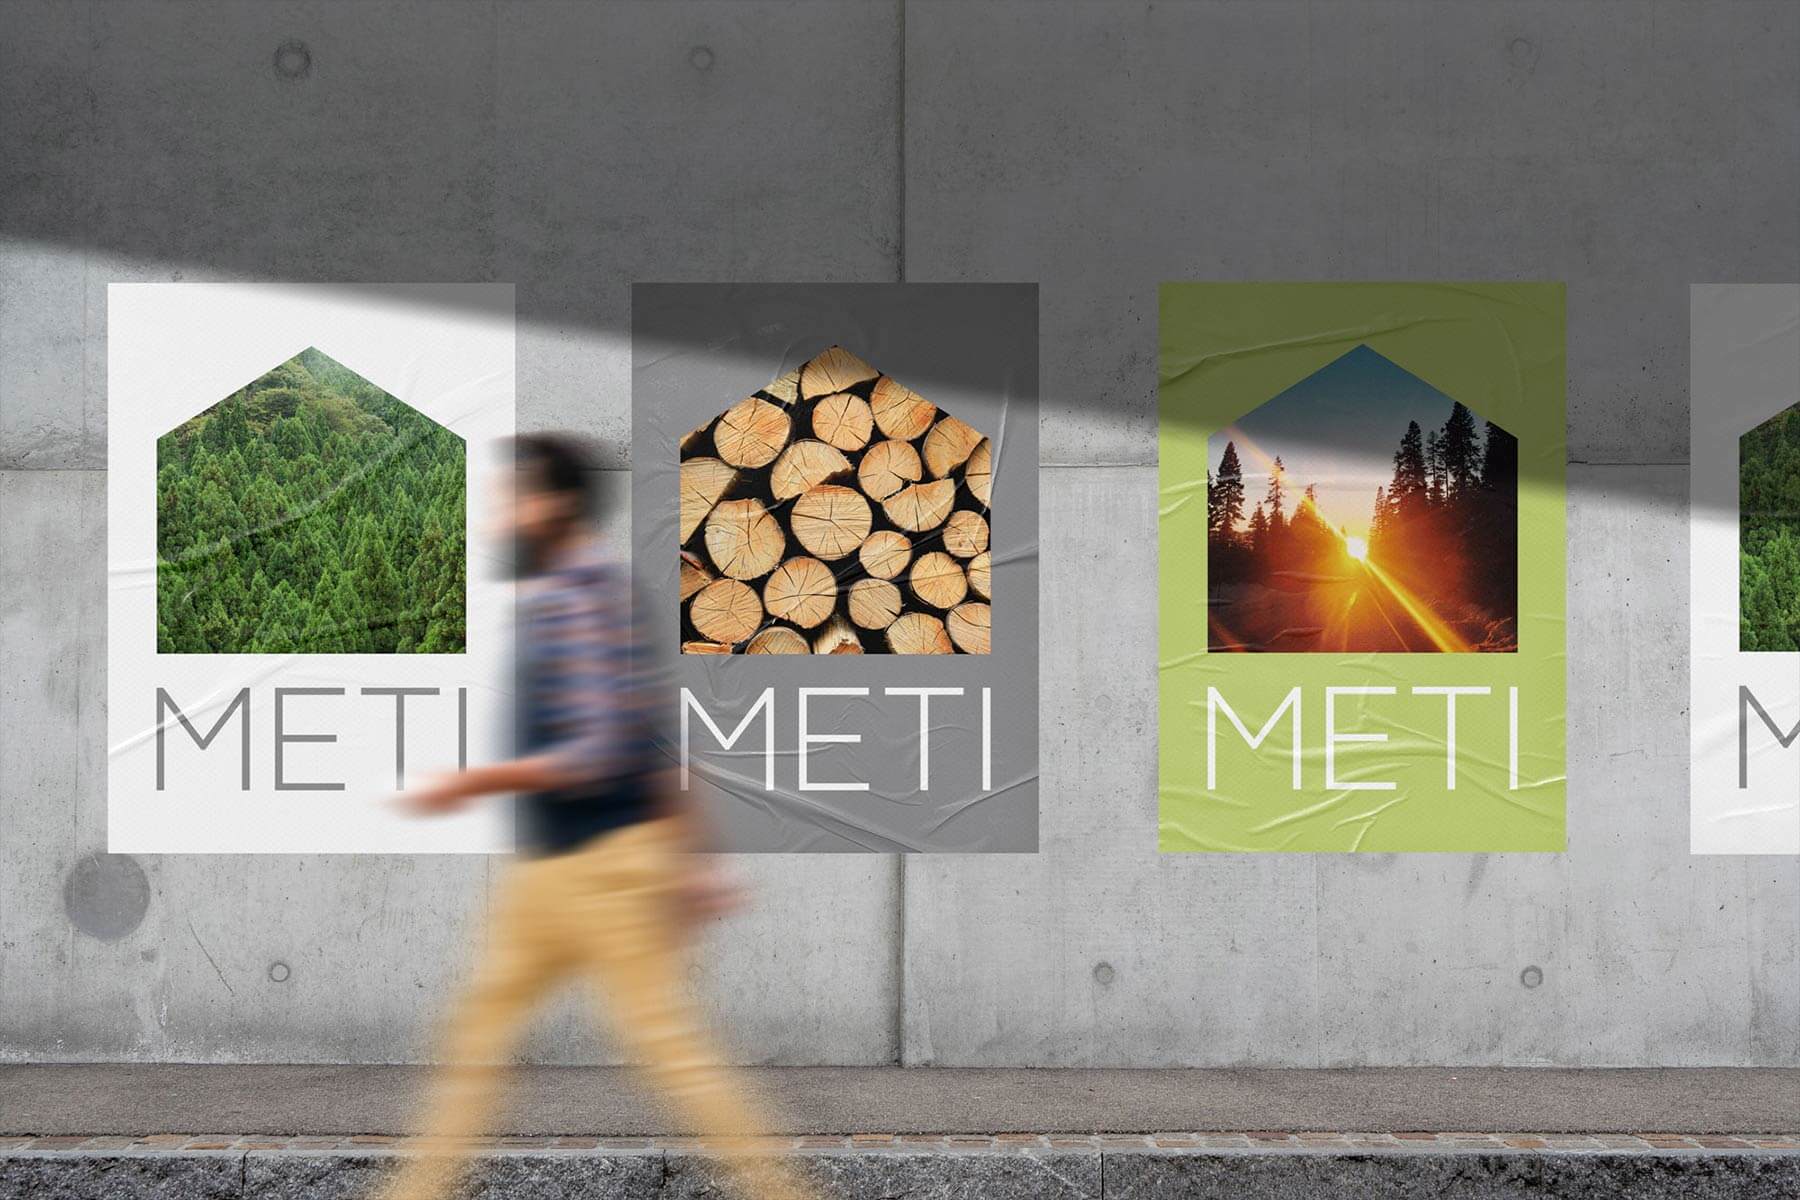 Logo e brand identity di Meti realizzato da SEBA! grafico di Gravellona Toce nel VCO di vari manifesti